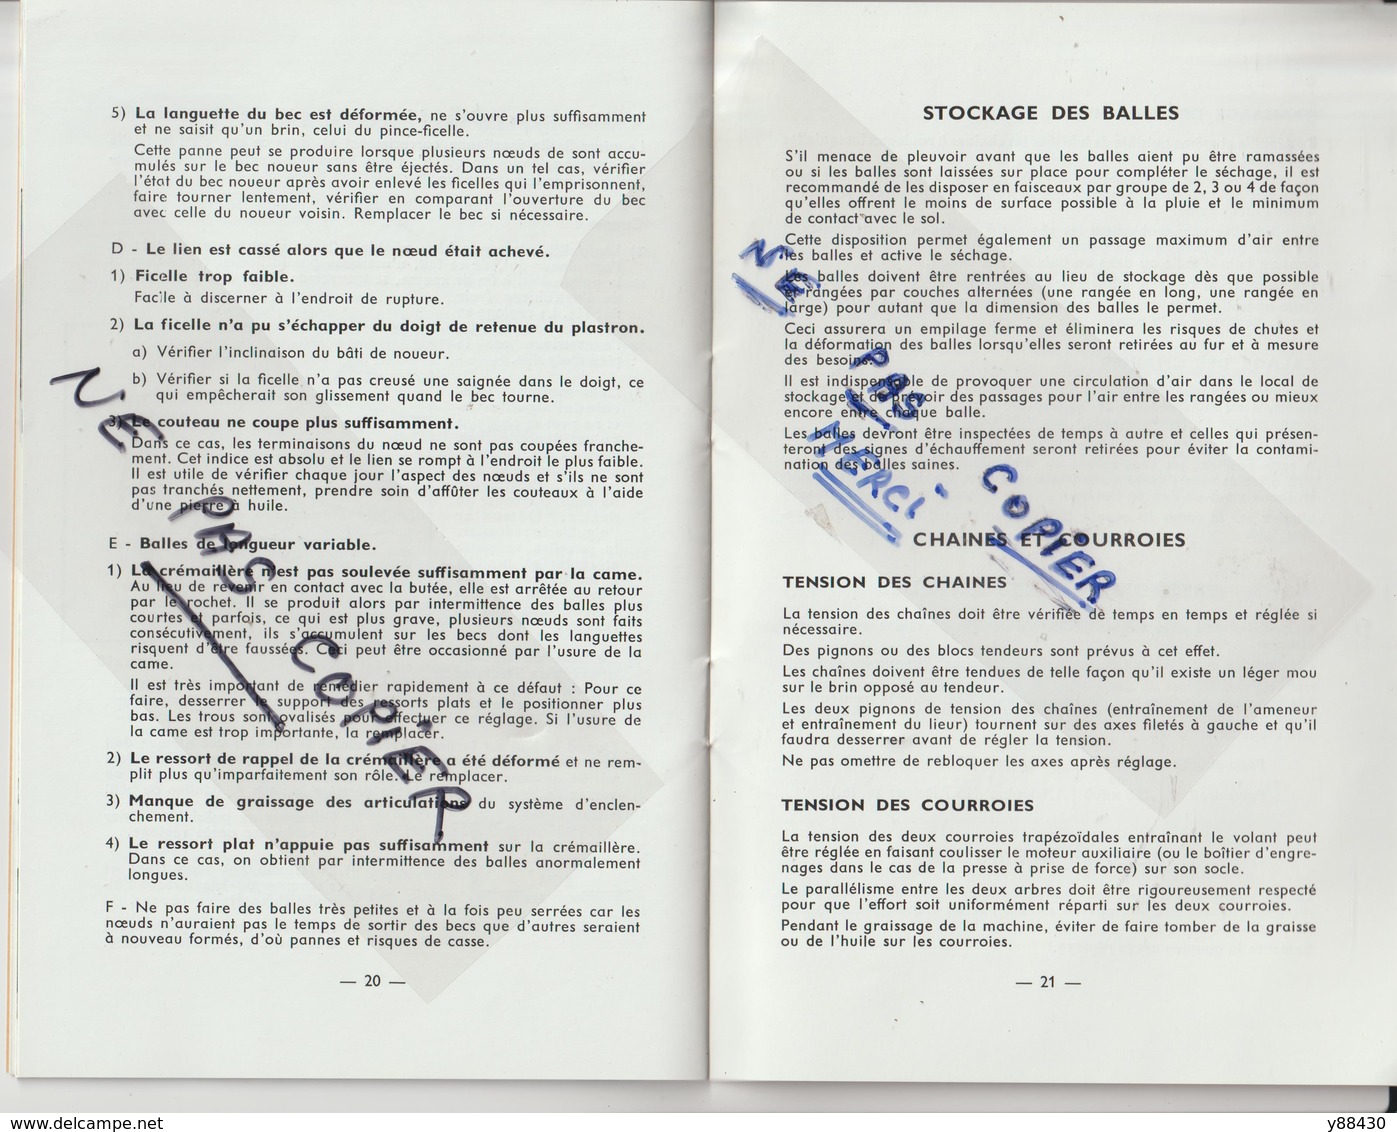 Livret pour RAMASSEUSE PRESSE n°801 des années 50 - MASSEY  FERGUSON - 28 pages - 15 scan.